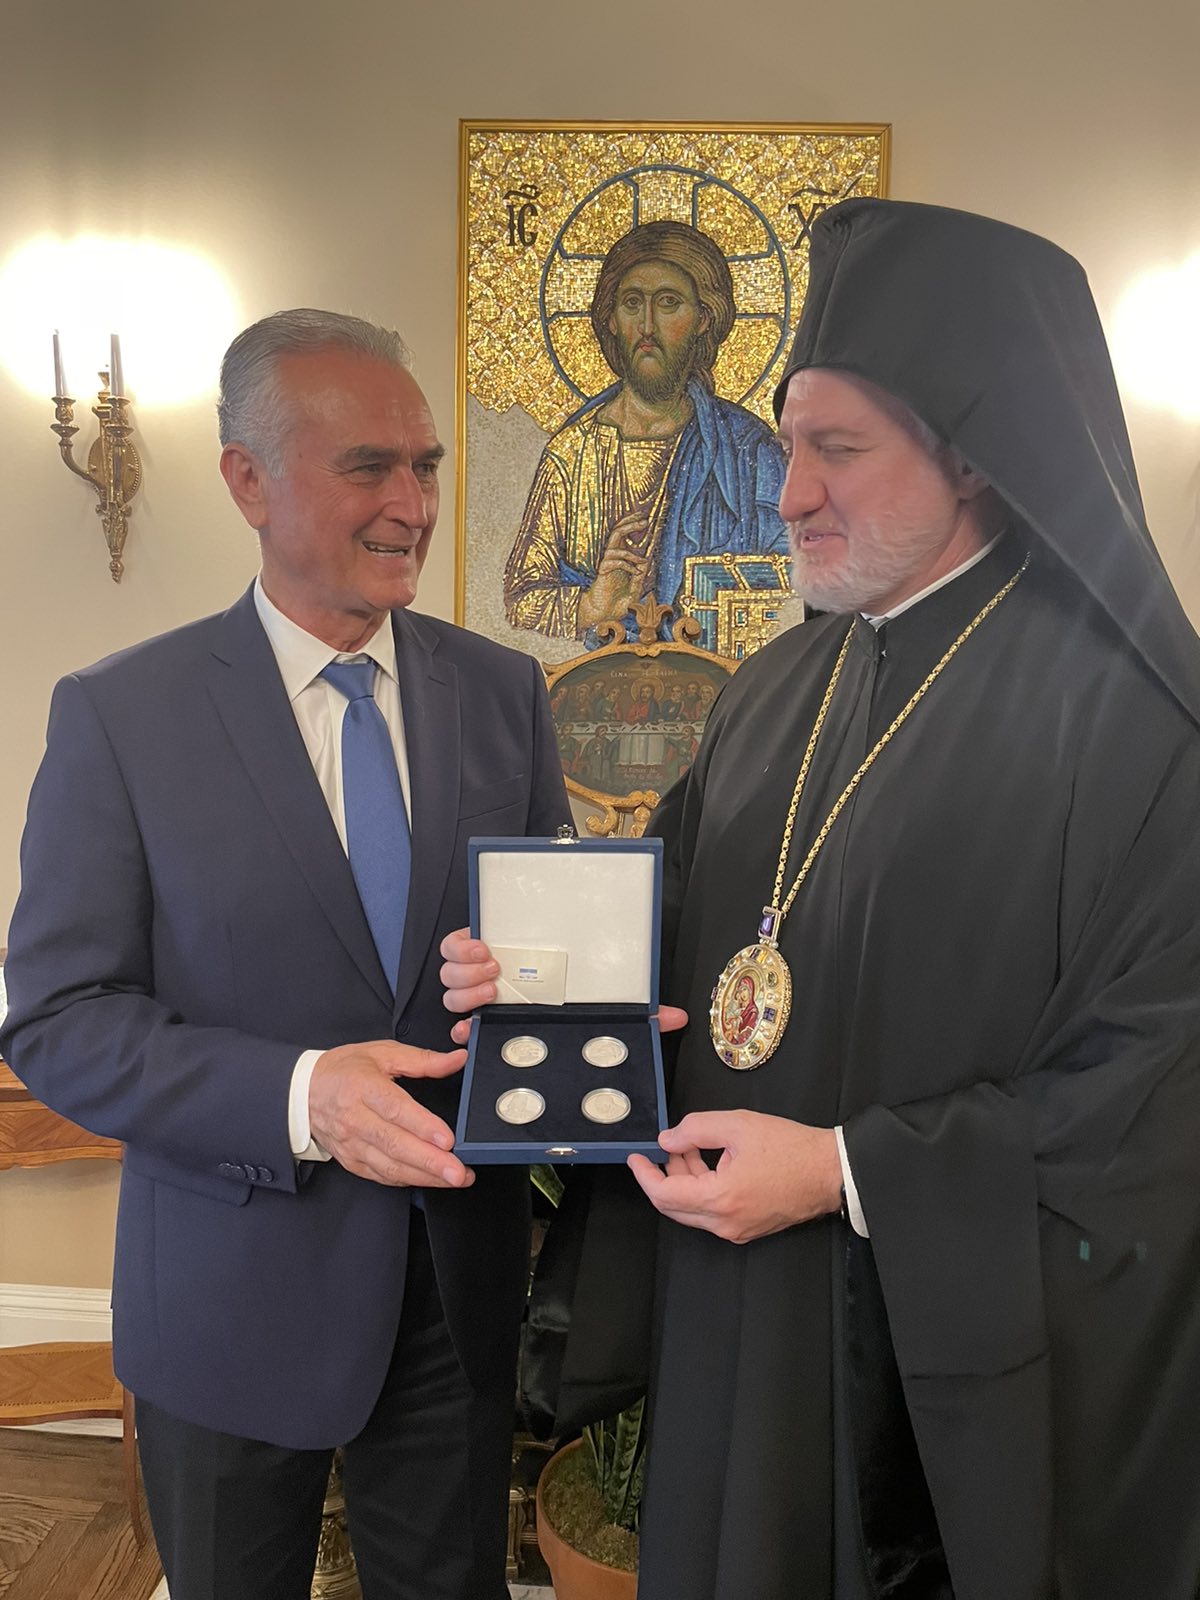 Με τον Αρχιεπίσκοπο Αμερικής συναντήθηκε στη Νέα Υόρκη ο Σάββας Αναστασιάδης